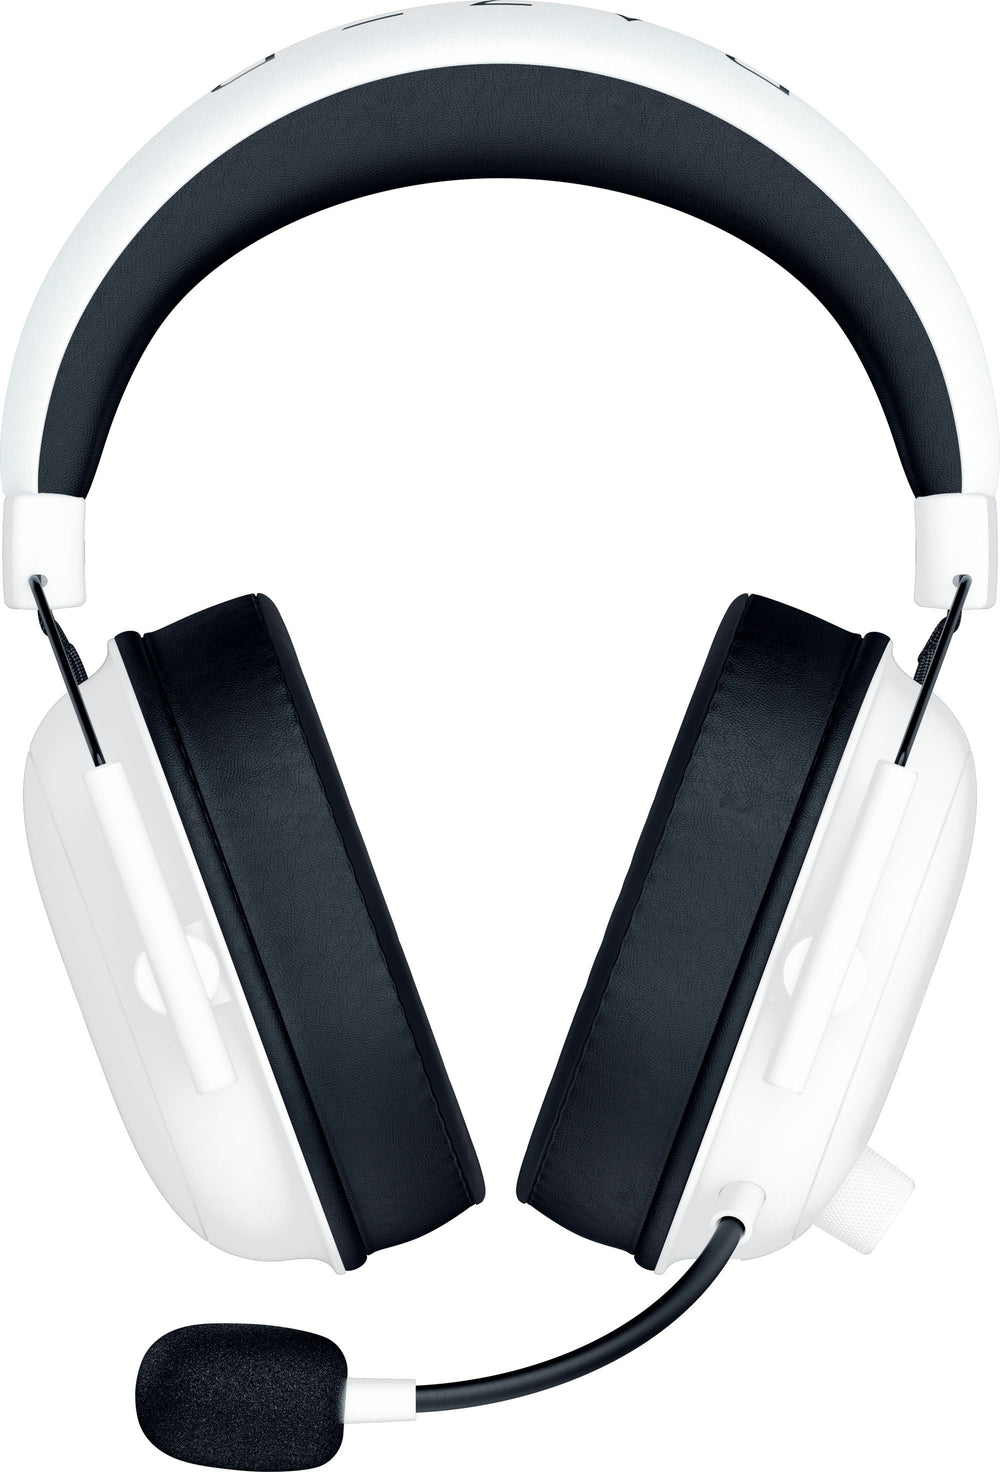 Razer - Blackshark V2 Hyperspeed Wireless Gaming Headset - White_1